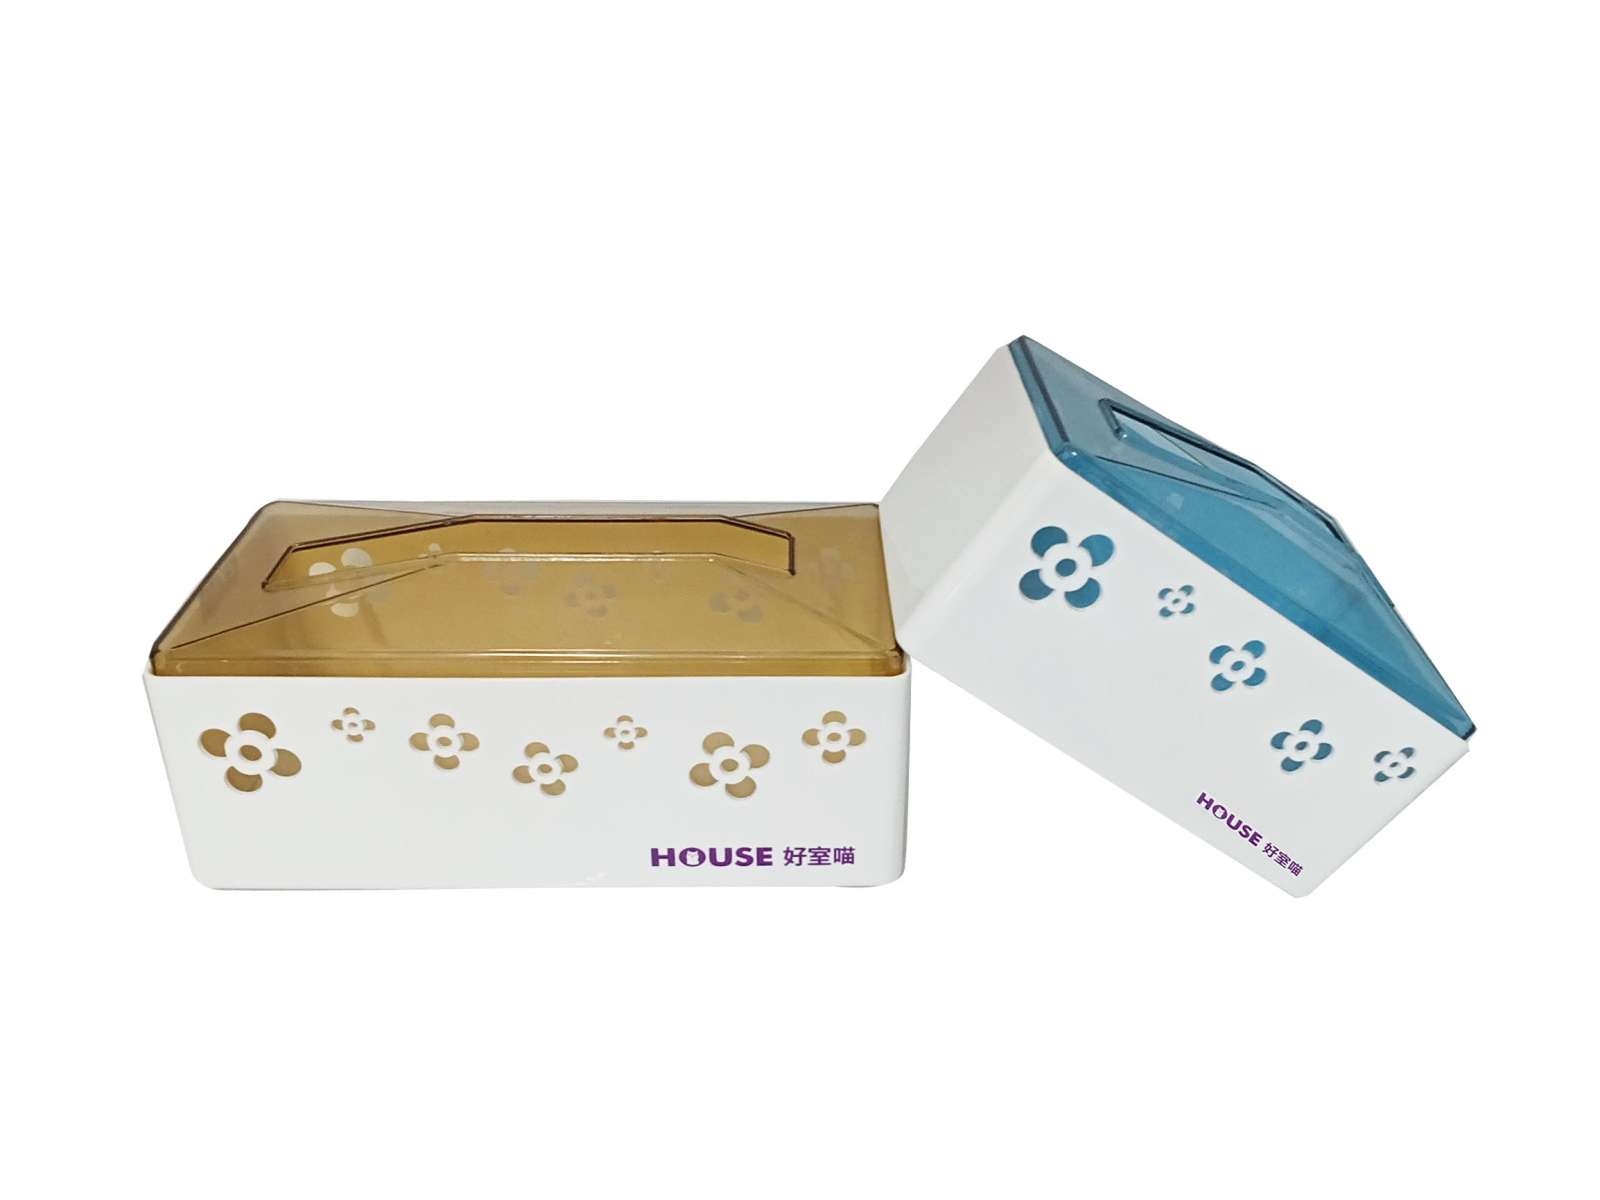 House tissue holder/box